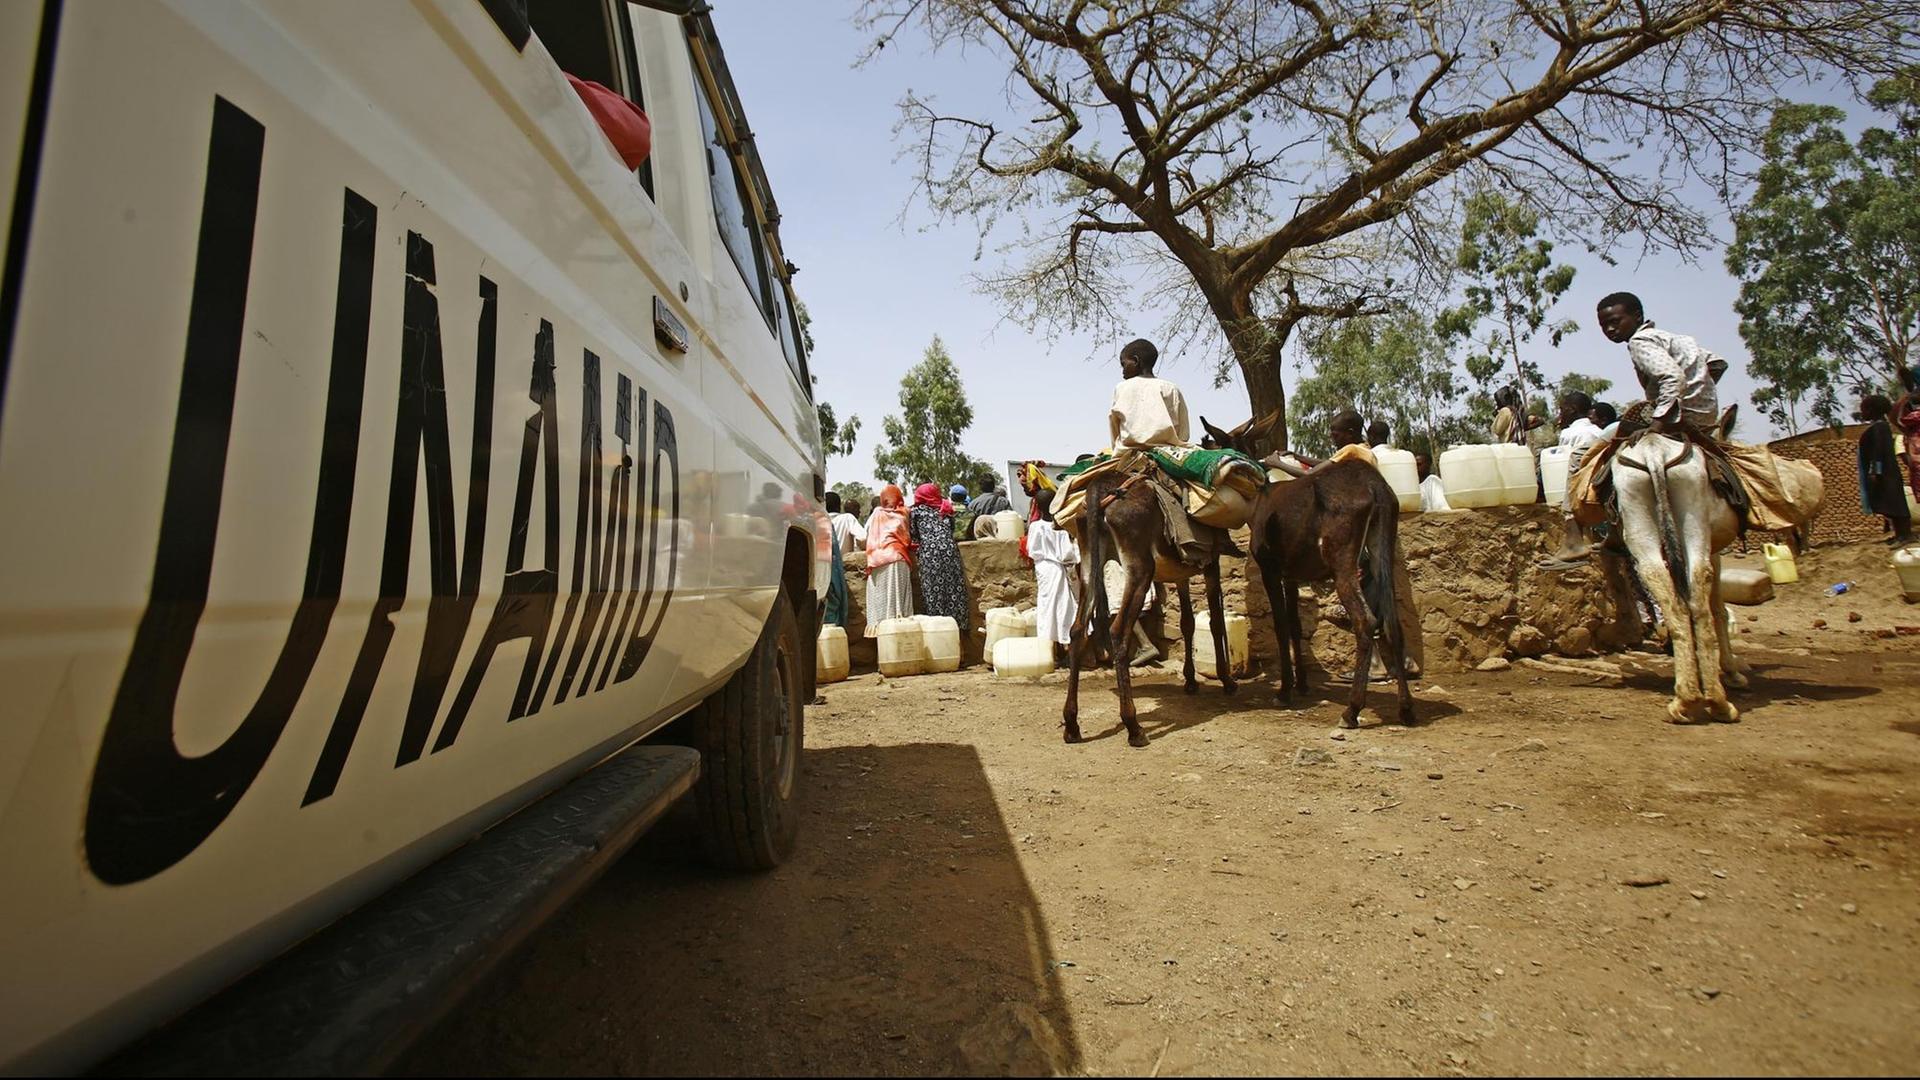 Ein Fahrzeug mit dem Aufdruck UNAMID steht auf einem sandigen Platz. Daneben stehen Frauen mit Wasserkanistern. Kinder sitzen auf bepackten Eseln.